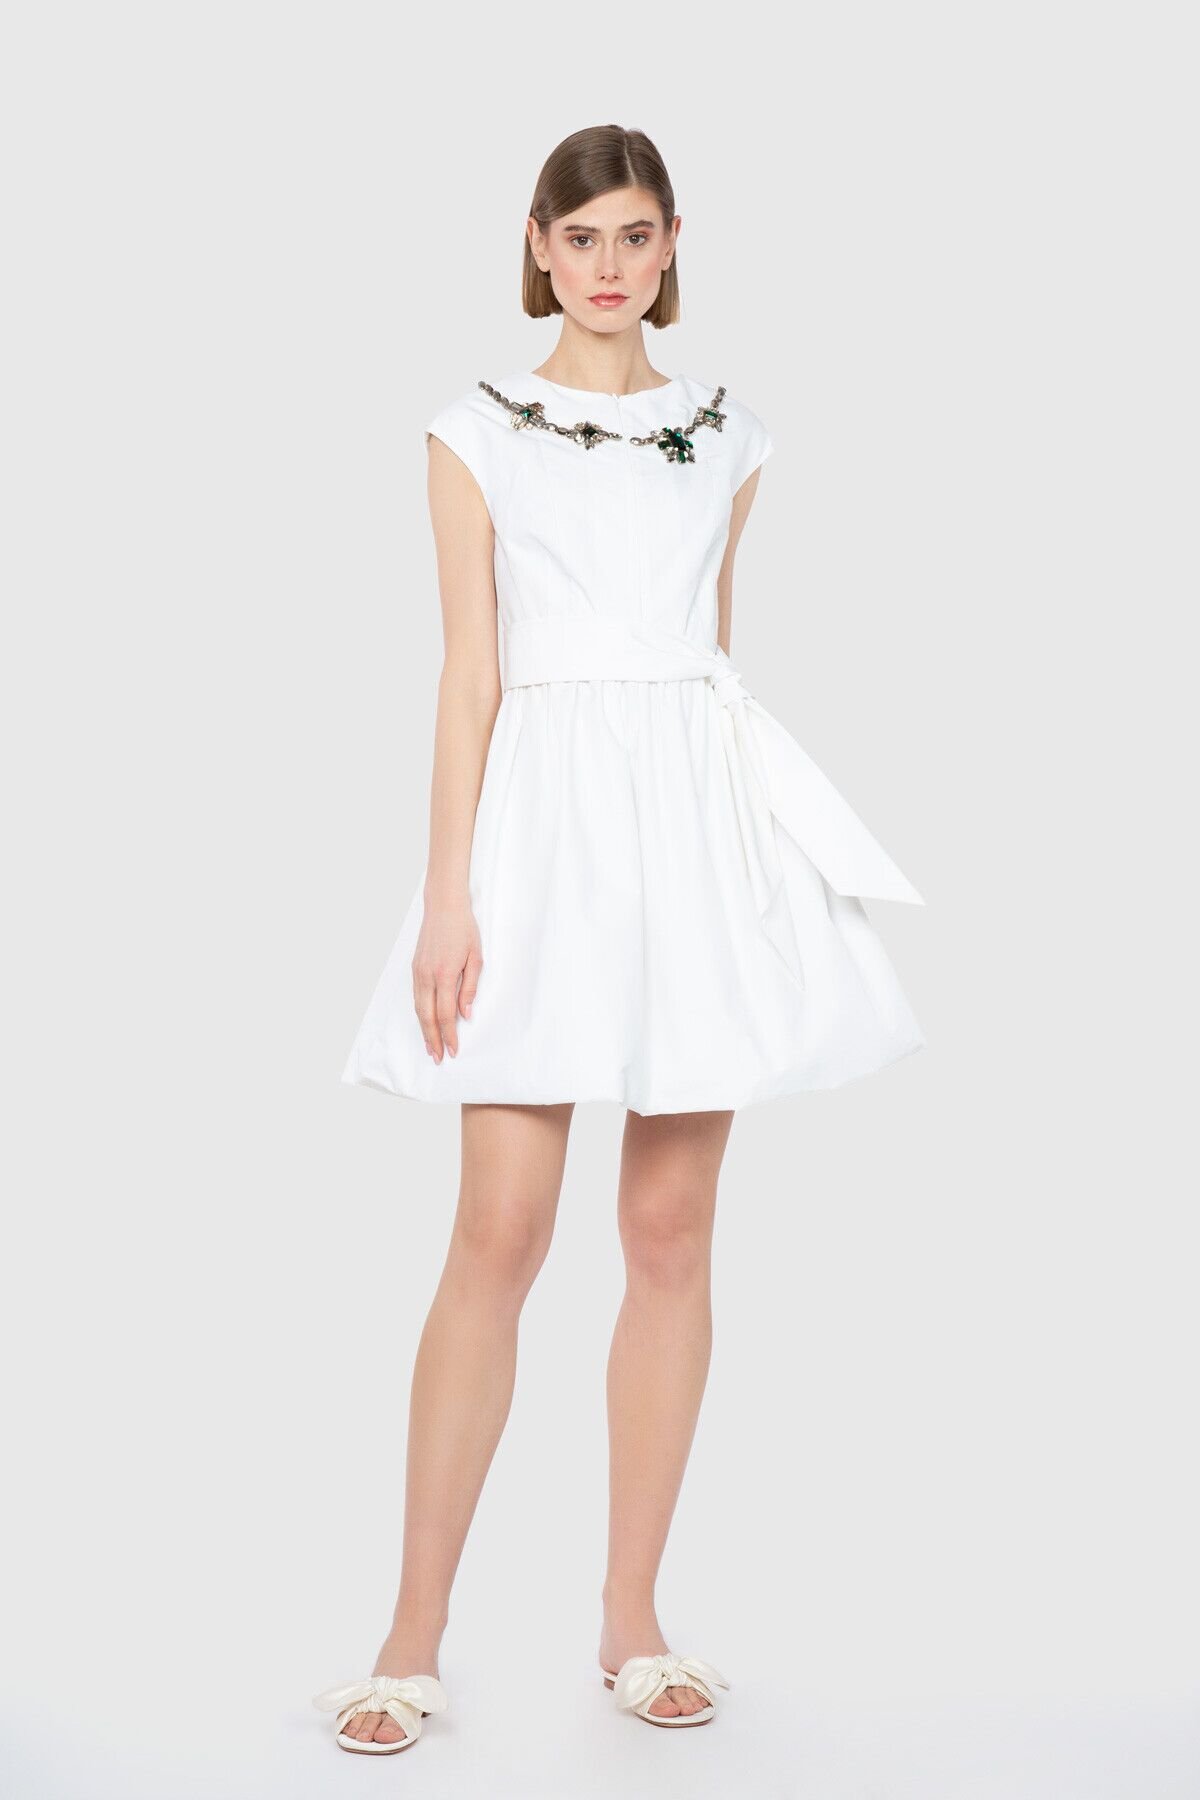 Dice Kayek İşleme Yaka Detaylı Mini Tasarım Elbise